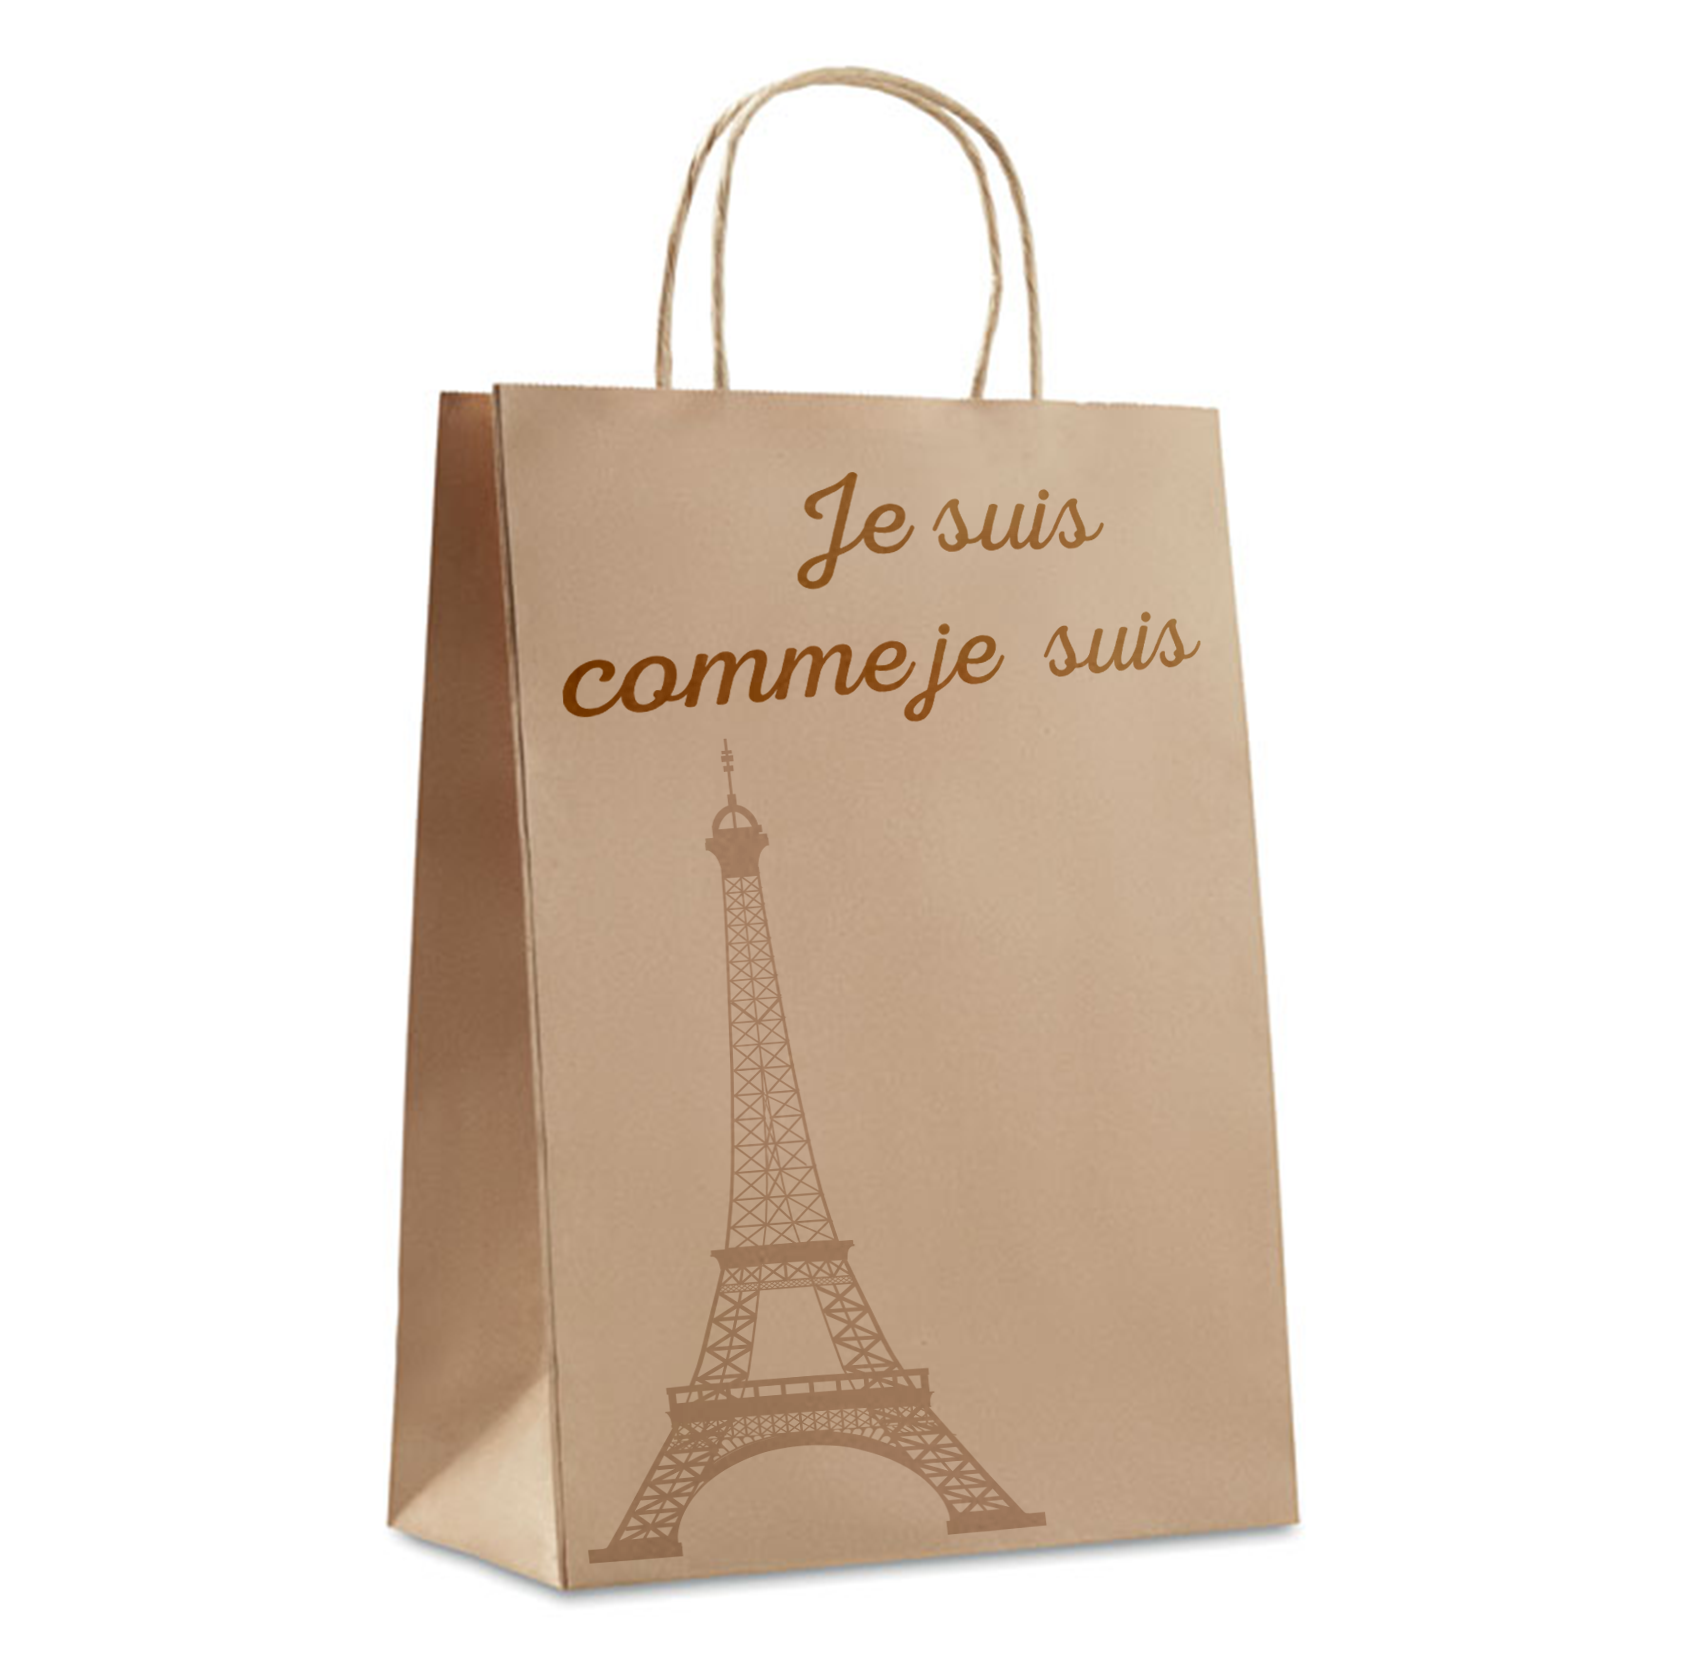 Petit sac cadeau personnalisé en papier - Elise - Zaprinta France